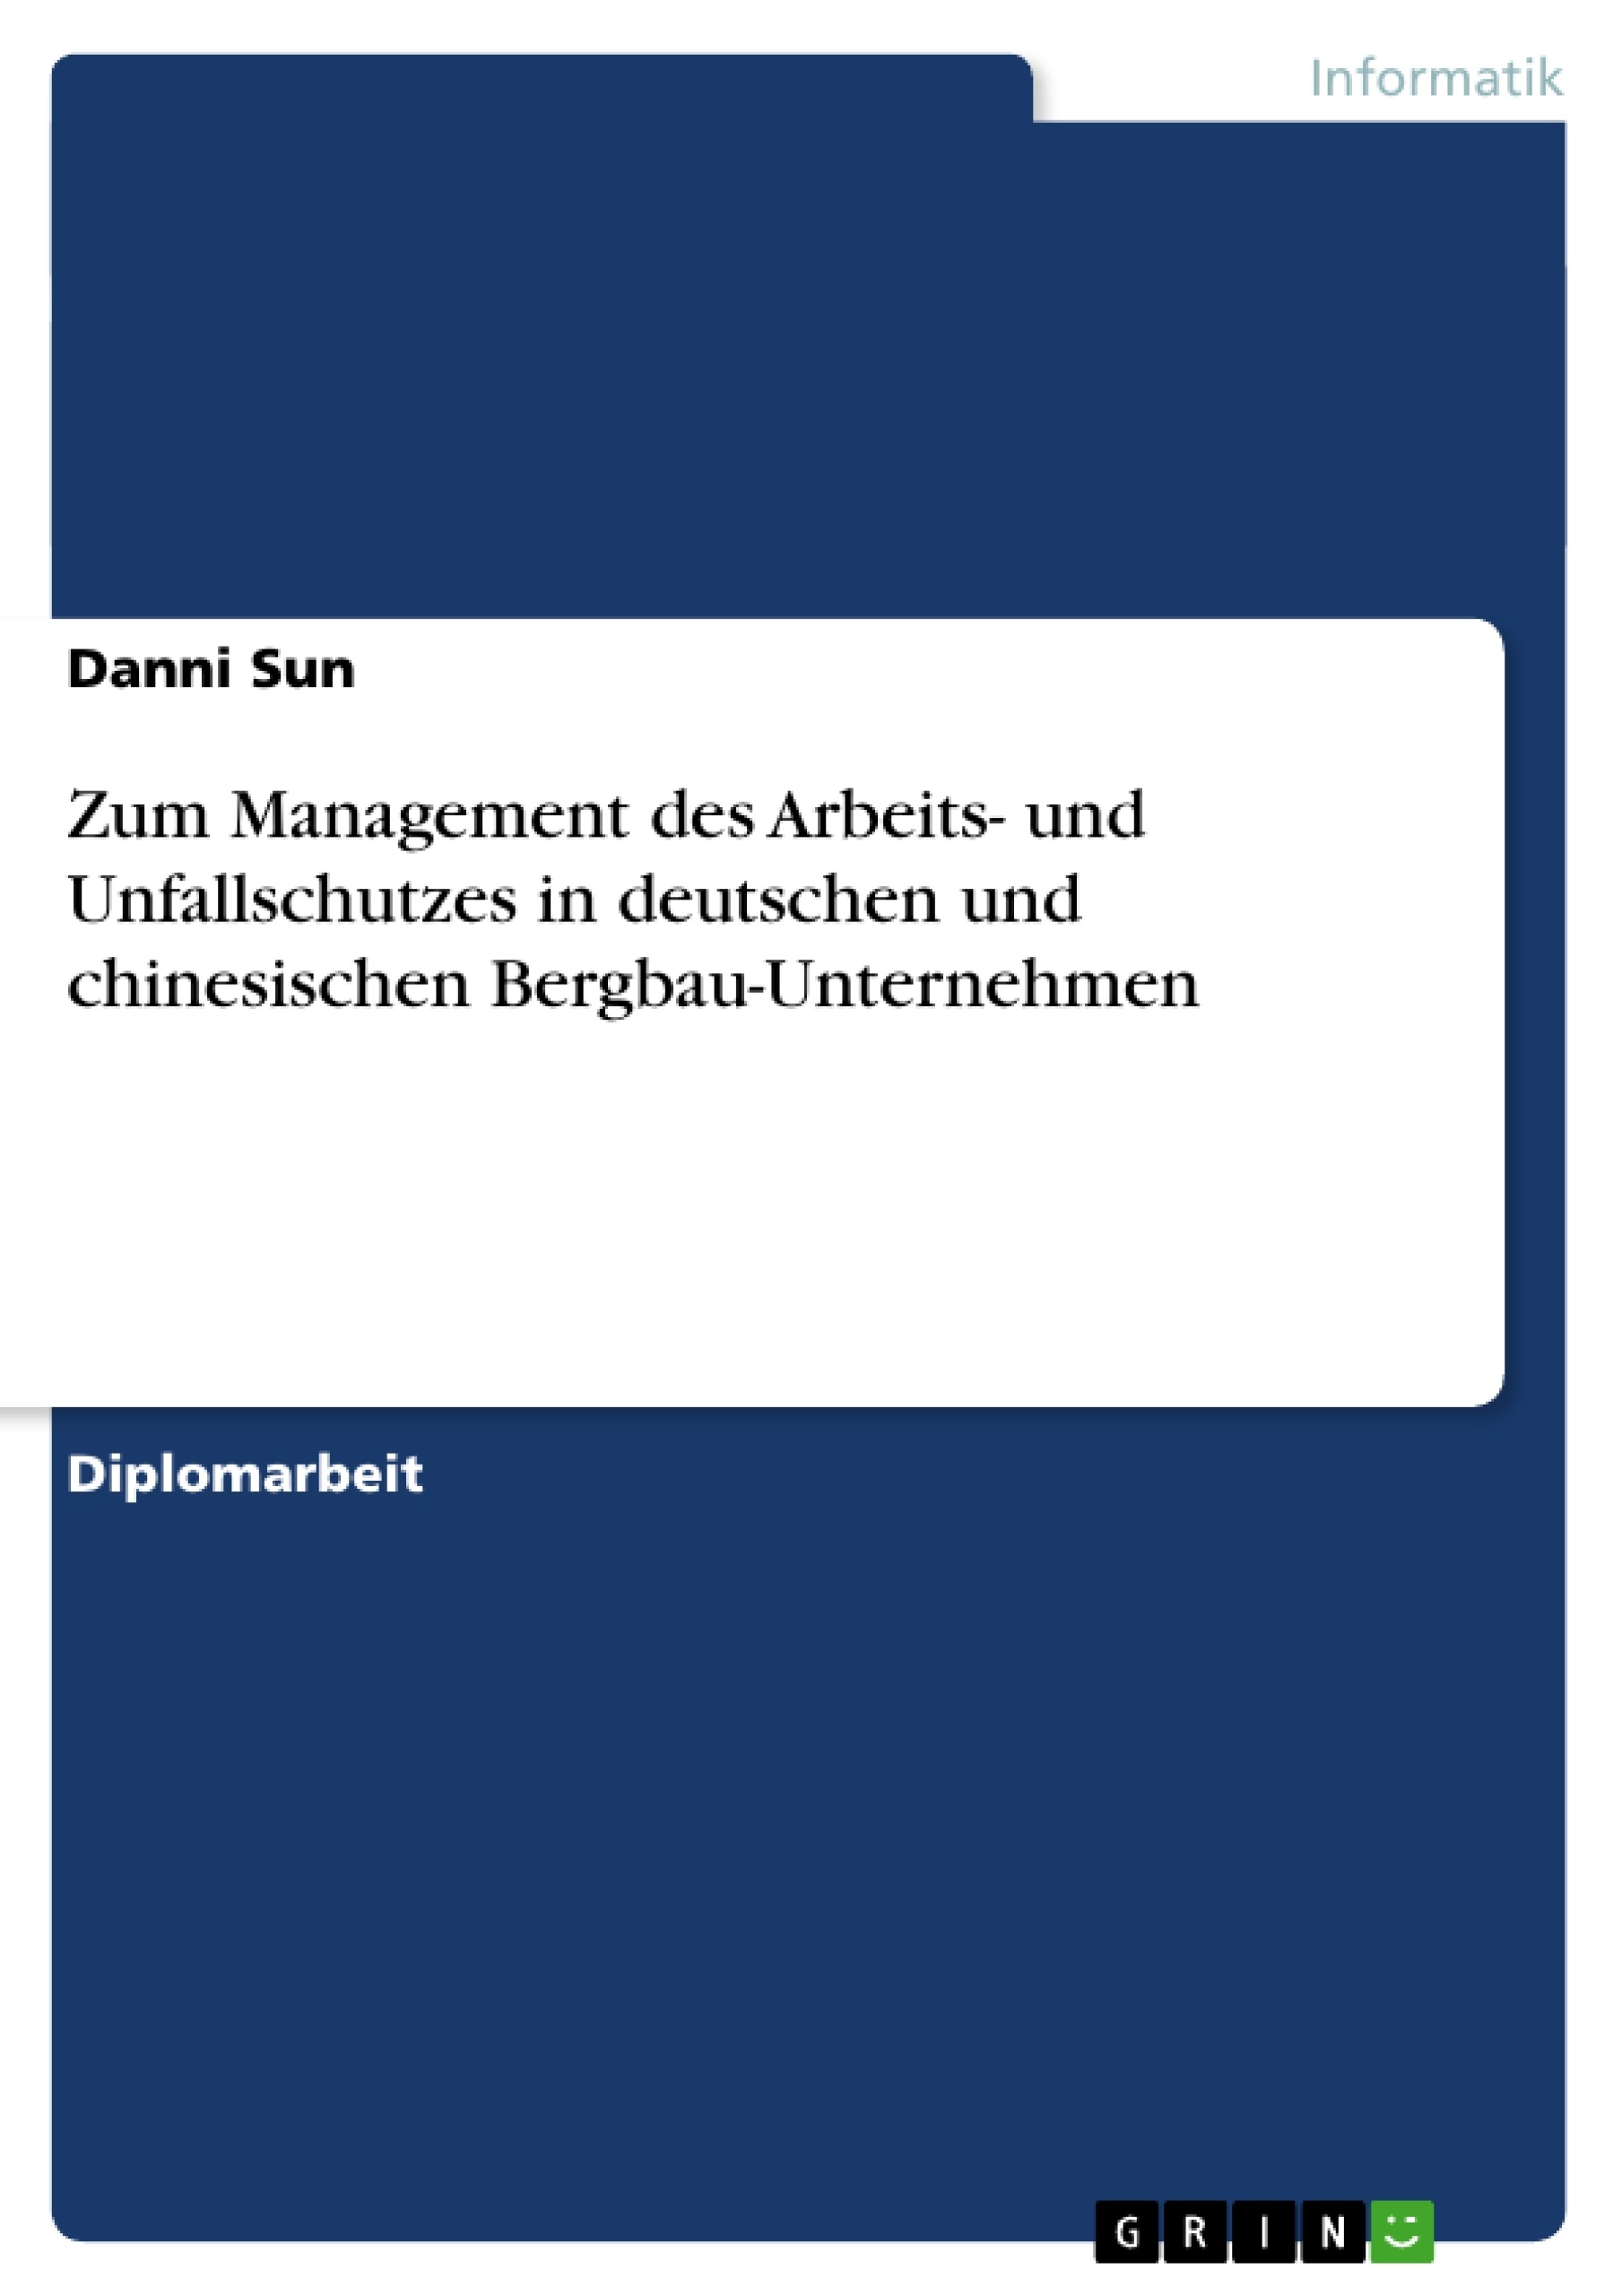 Titre: Zum Management des Arbeits- und Unfallschutzes in deutschen und chinesischen Bergbau-Unternehmen